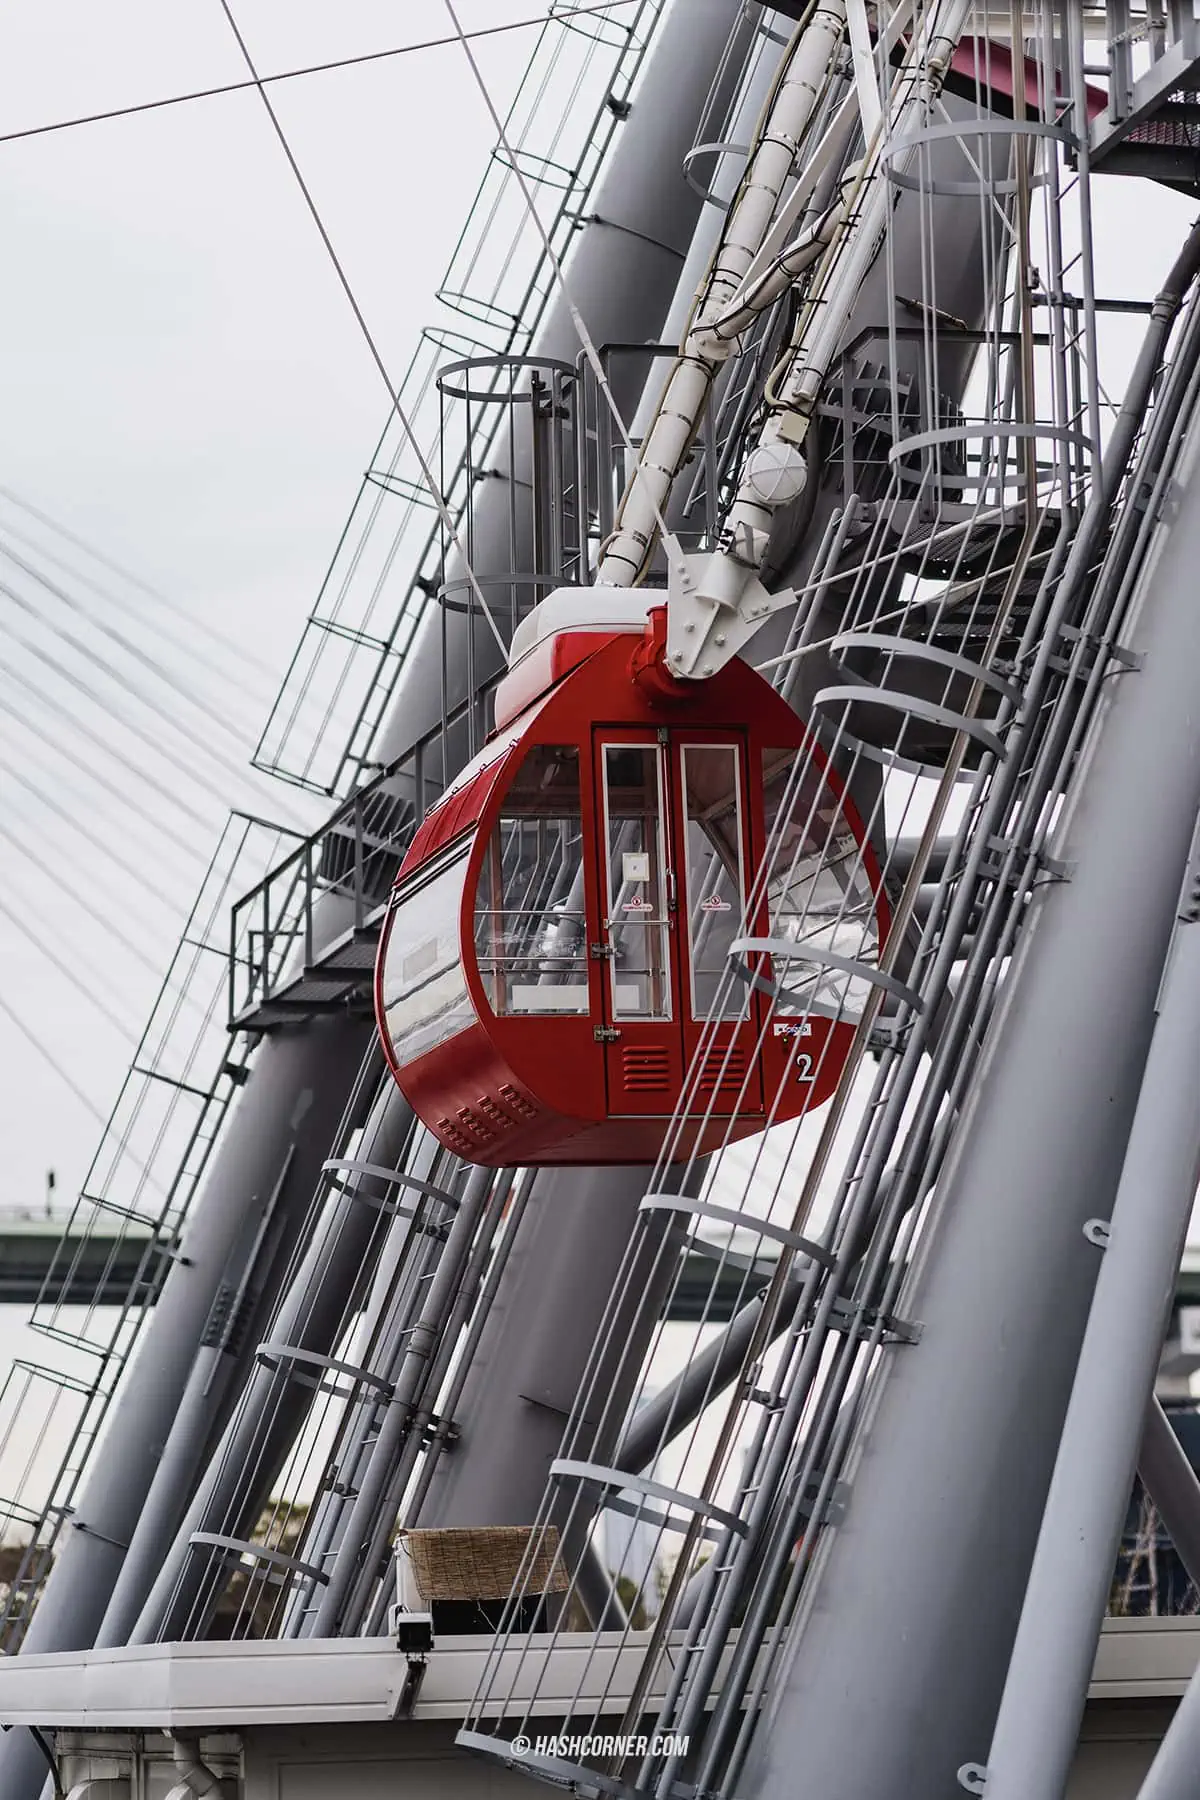 รีวิว ชิงช้าสวรรค์เท็มโปซาน (Tempozan Giant Ferris Wheel) x โอซาก้า 